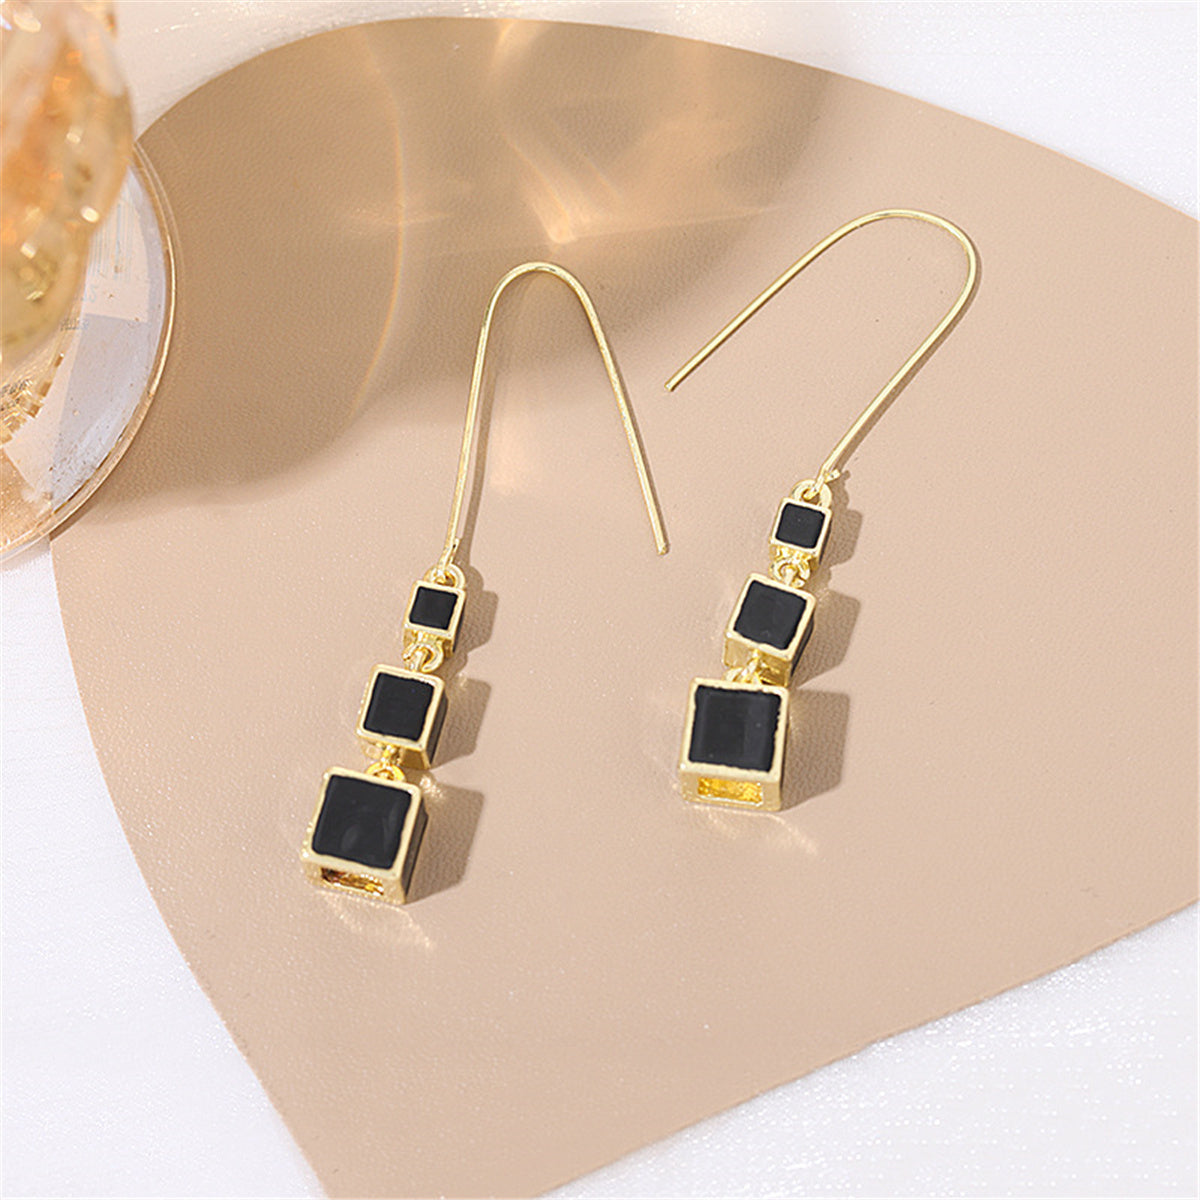 Black Enamel & 18K Gold-Plated Linked Cube Drop Earrings